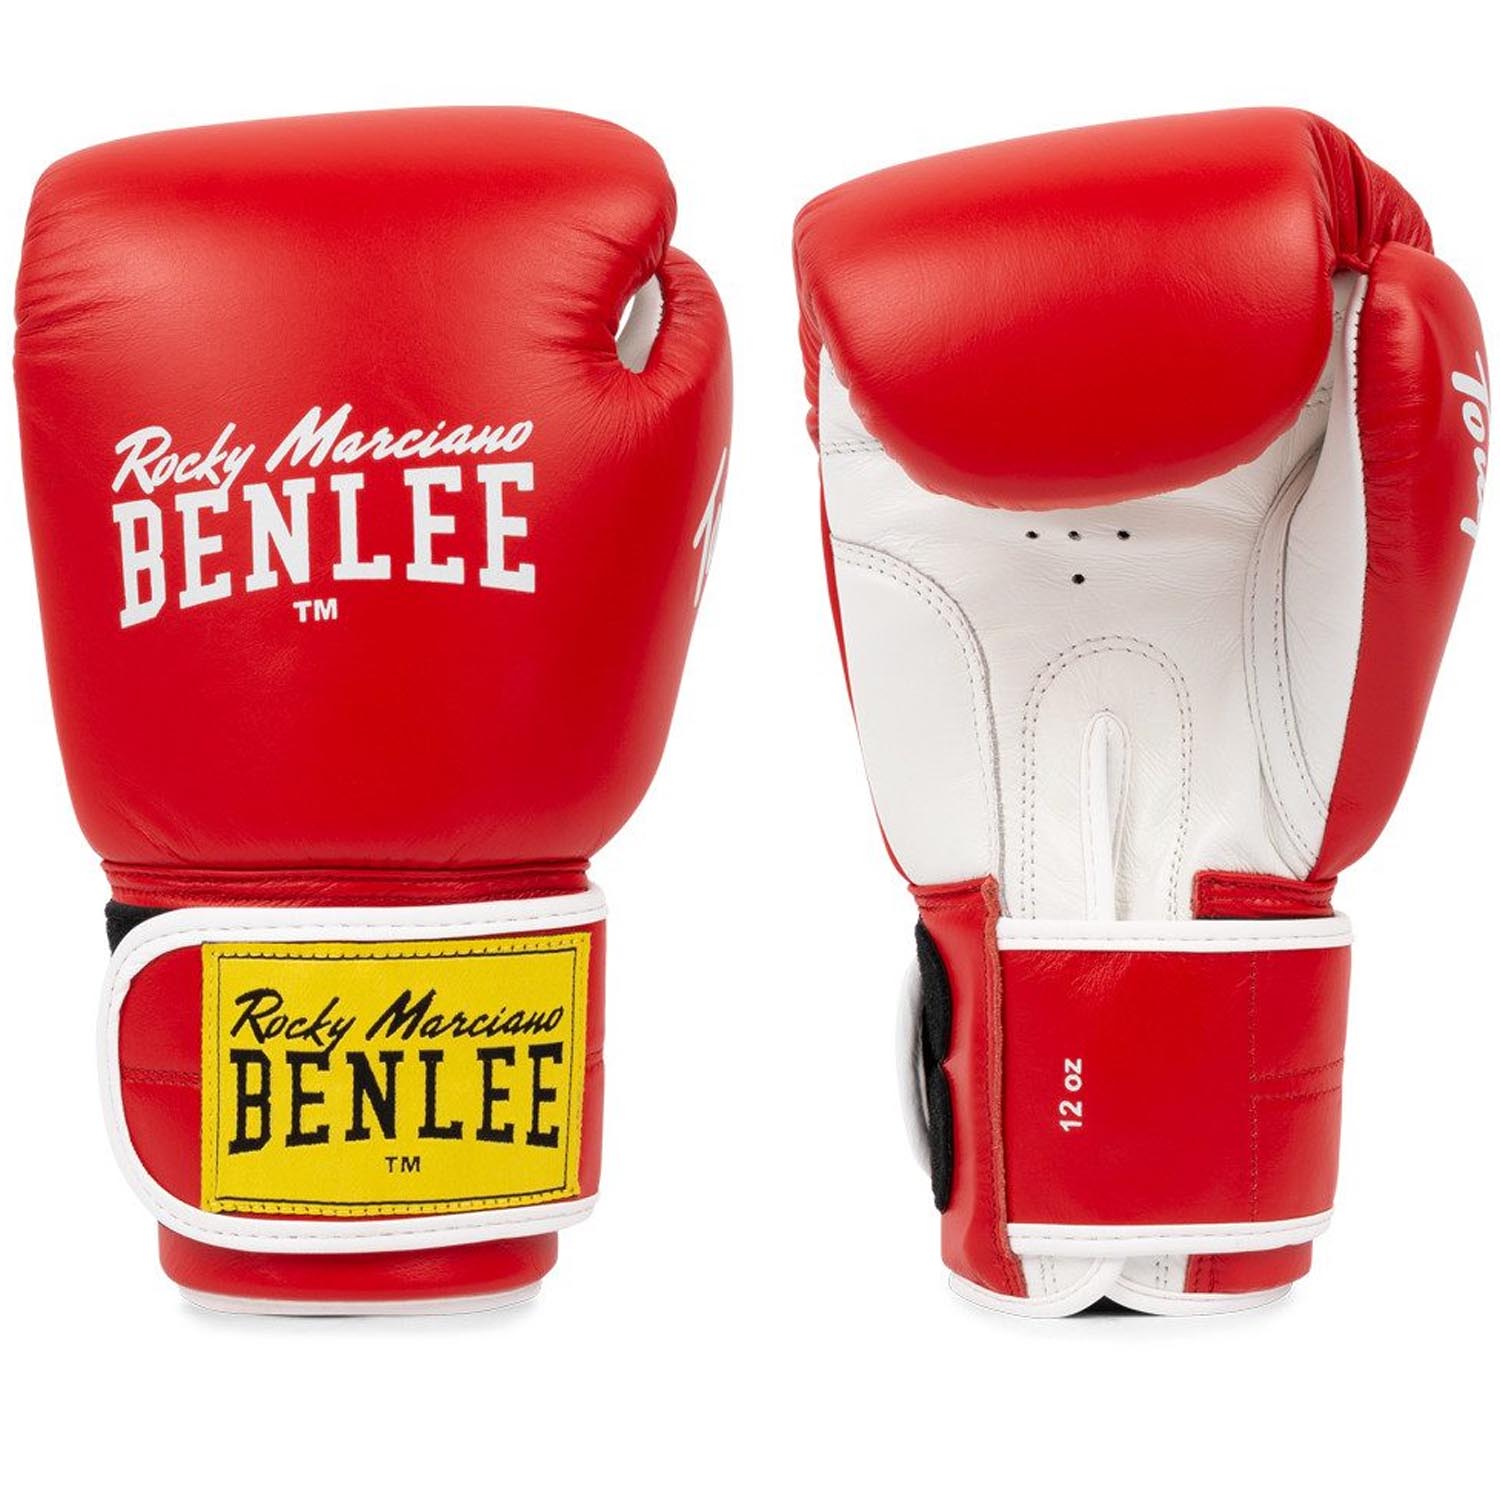 BENLEE Boxhandschuhe, Tough, rot-weiß